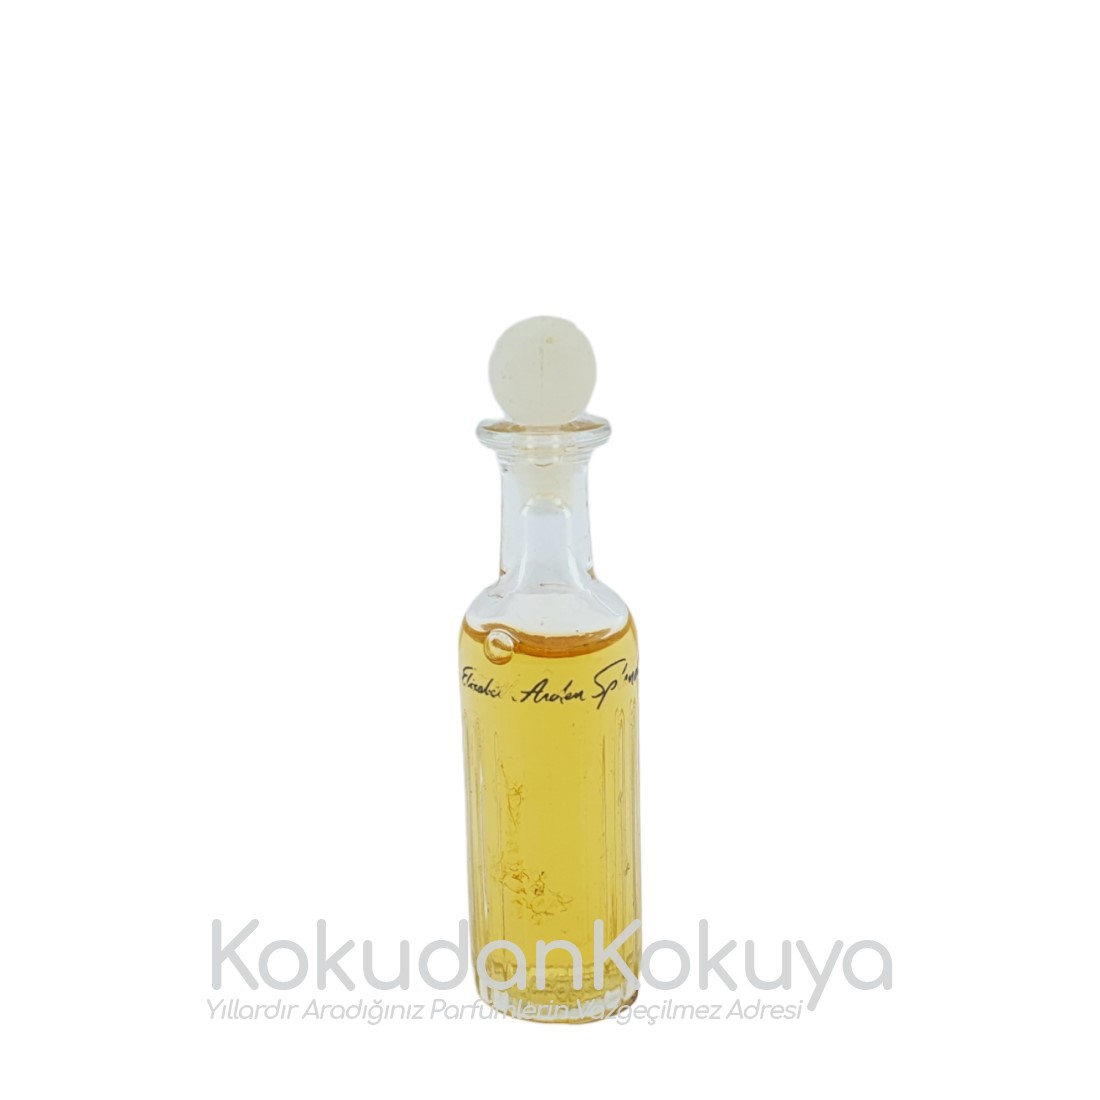 ELIZABETH ARDEN Splendor (Vintage) Parfüm Kadın 3.75ml Minyatür (Mini Perfume) Dökme 